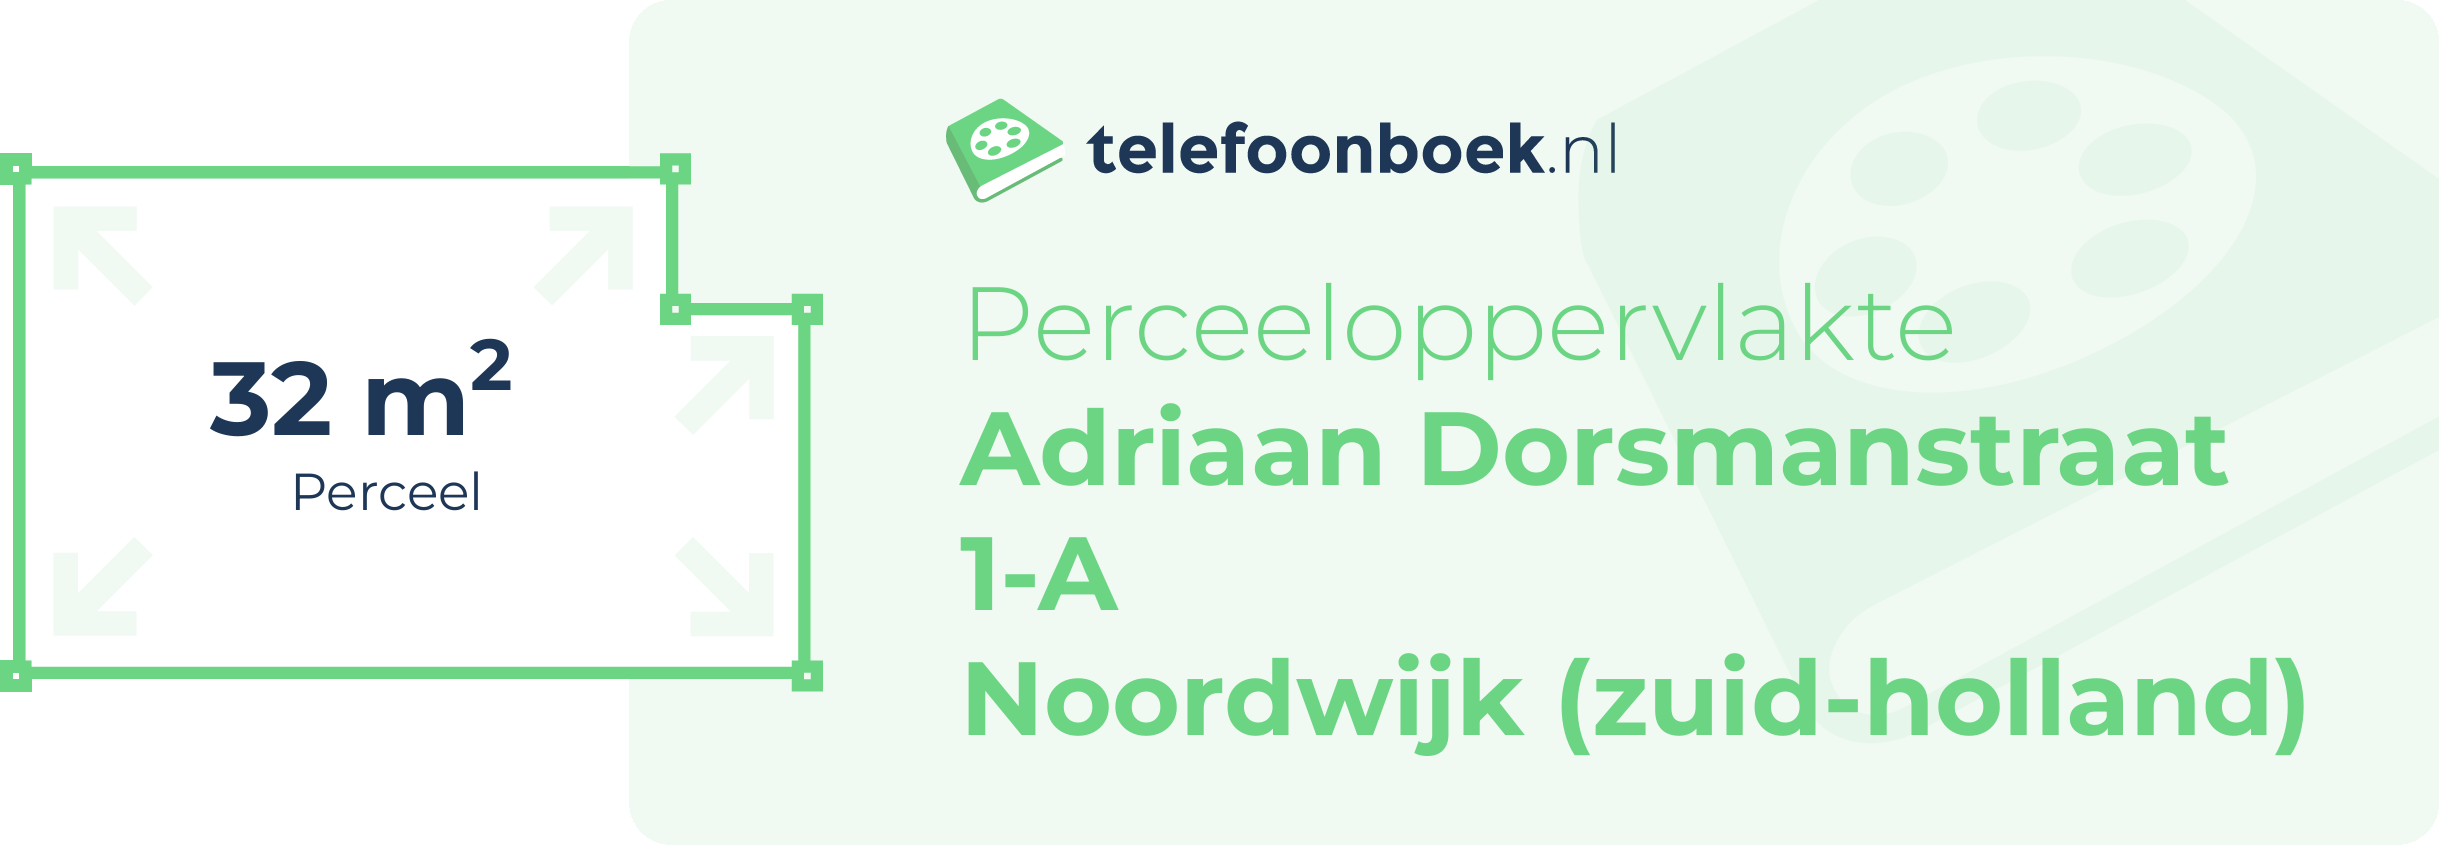 Perceeloppervlakte Adriaan Dorsmanstraat 1-A Noordwijk (Zuid-Holland)